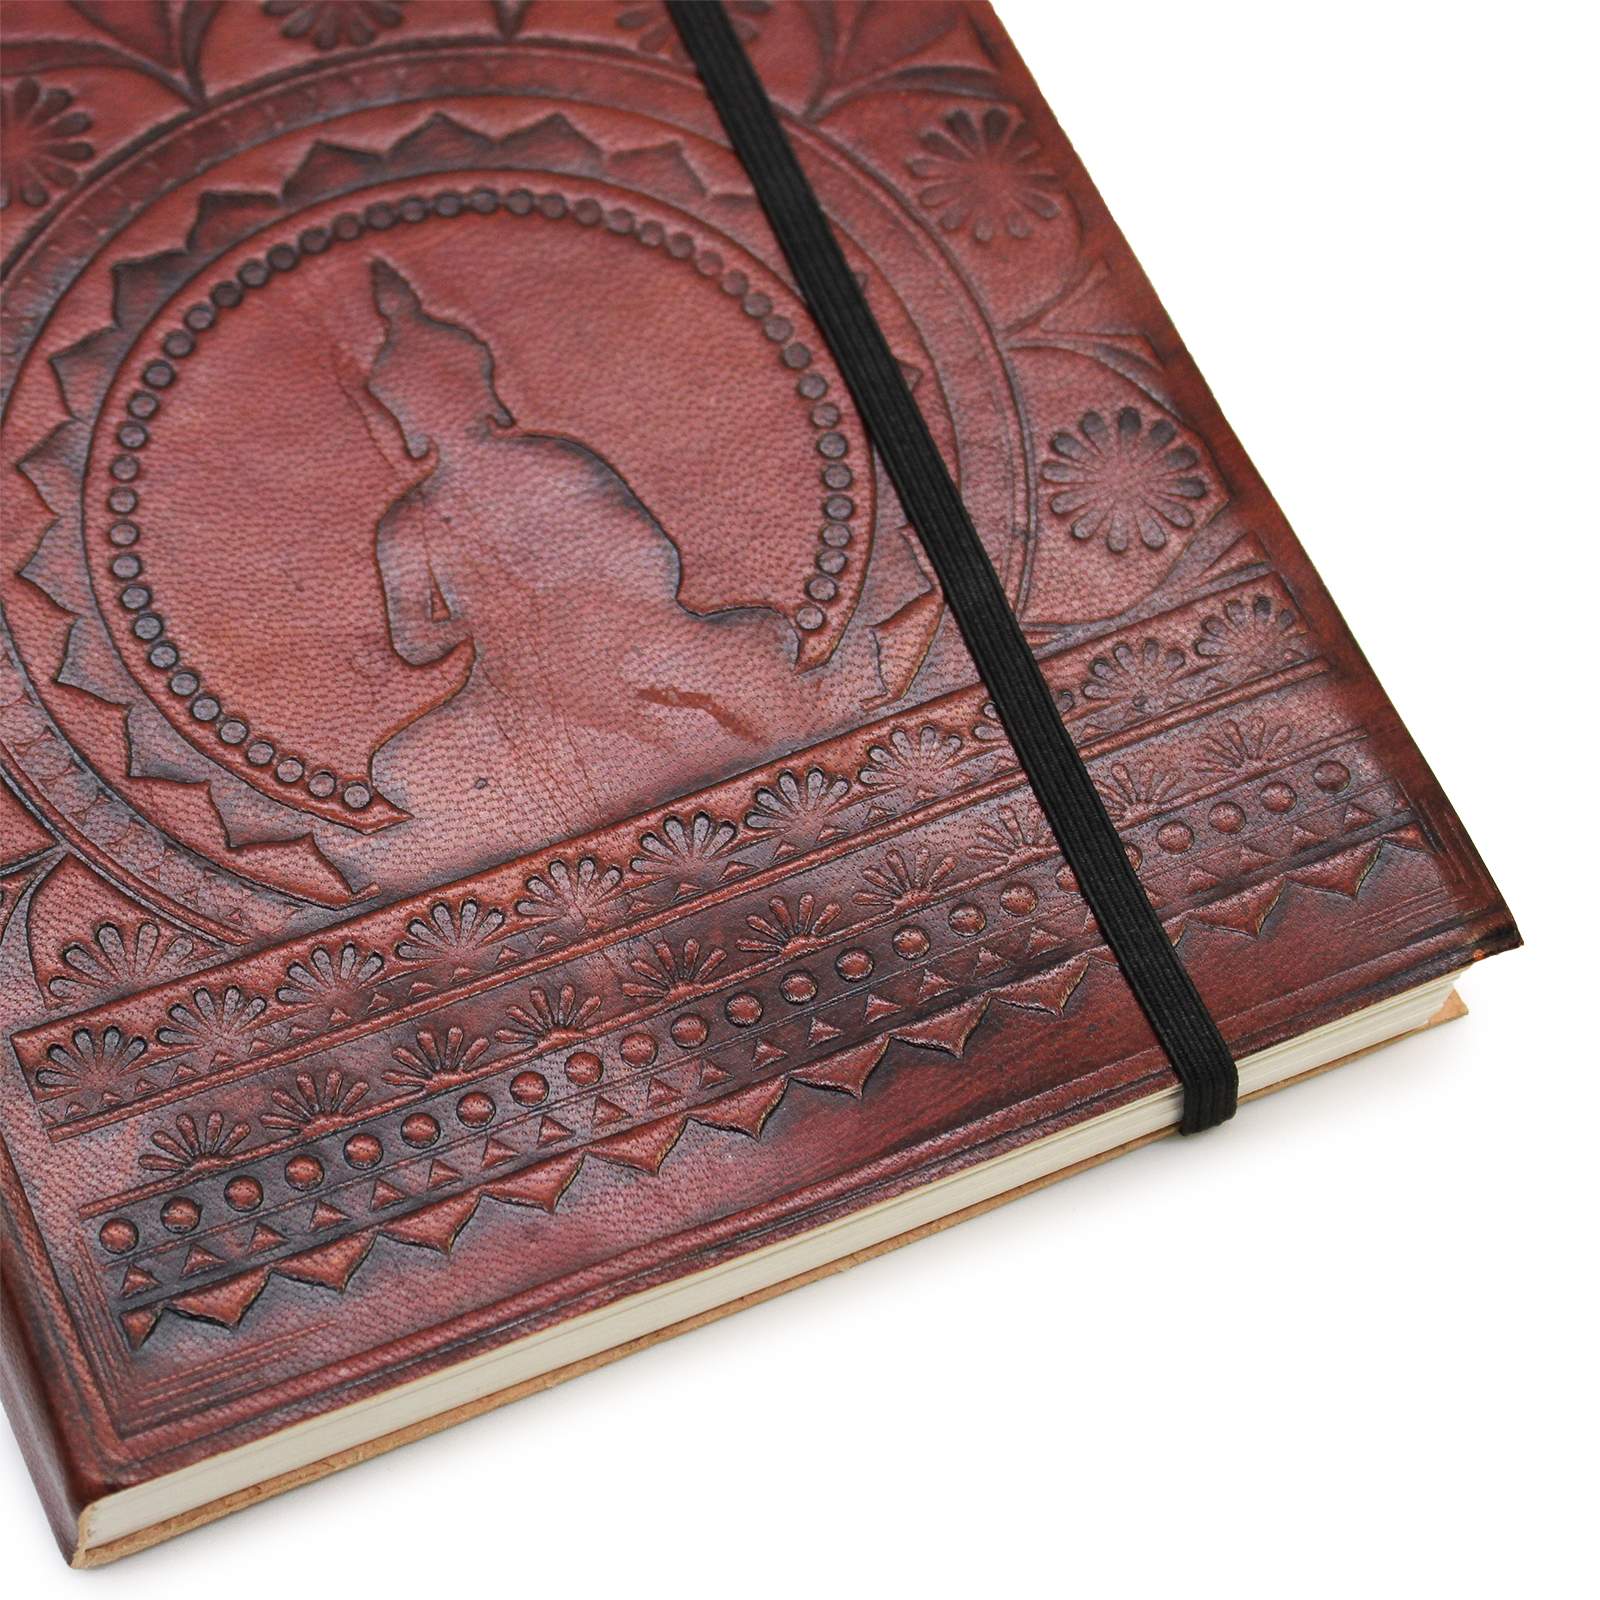 Notebook - Tibetan Mandala (small)